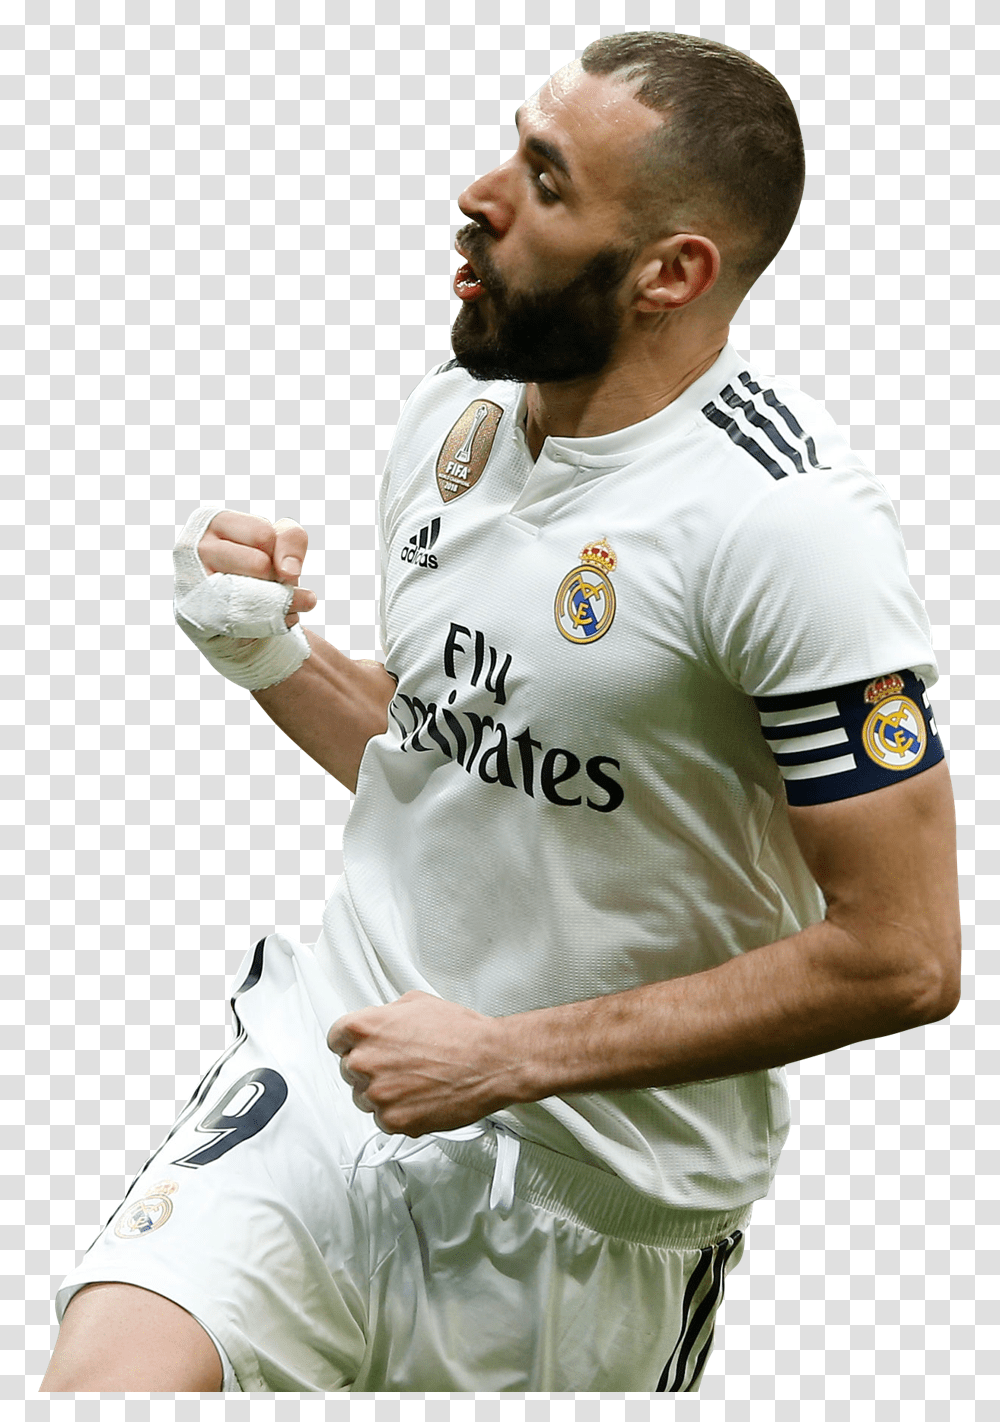 Karim Benzemarender Getafe Vs Real Madrid 2019, Person, Sphere, Shirt Transparent Png